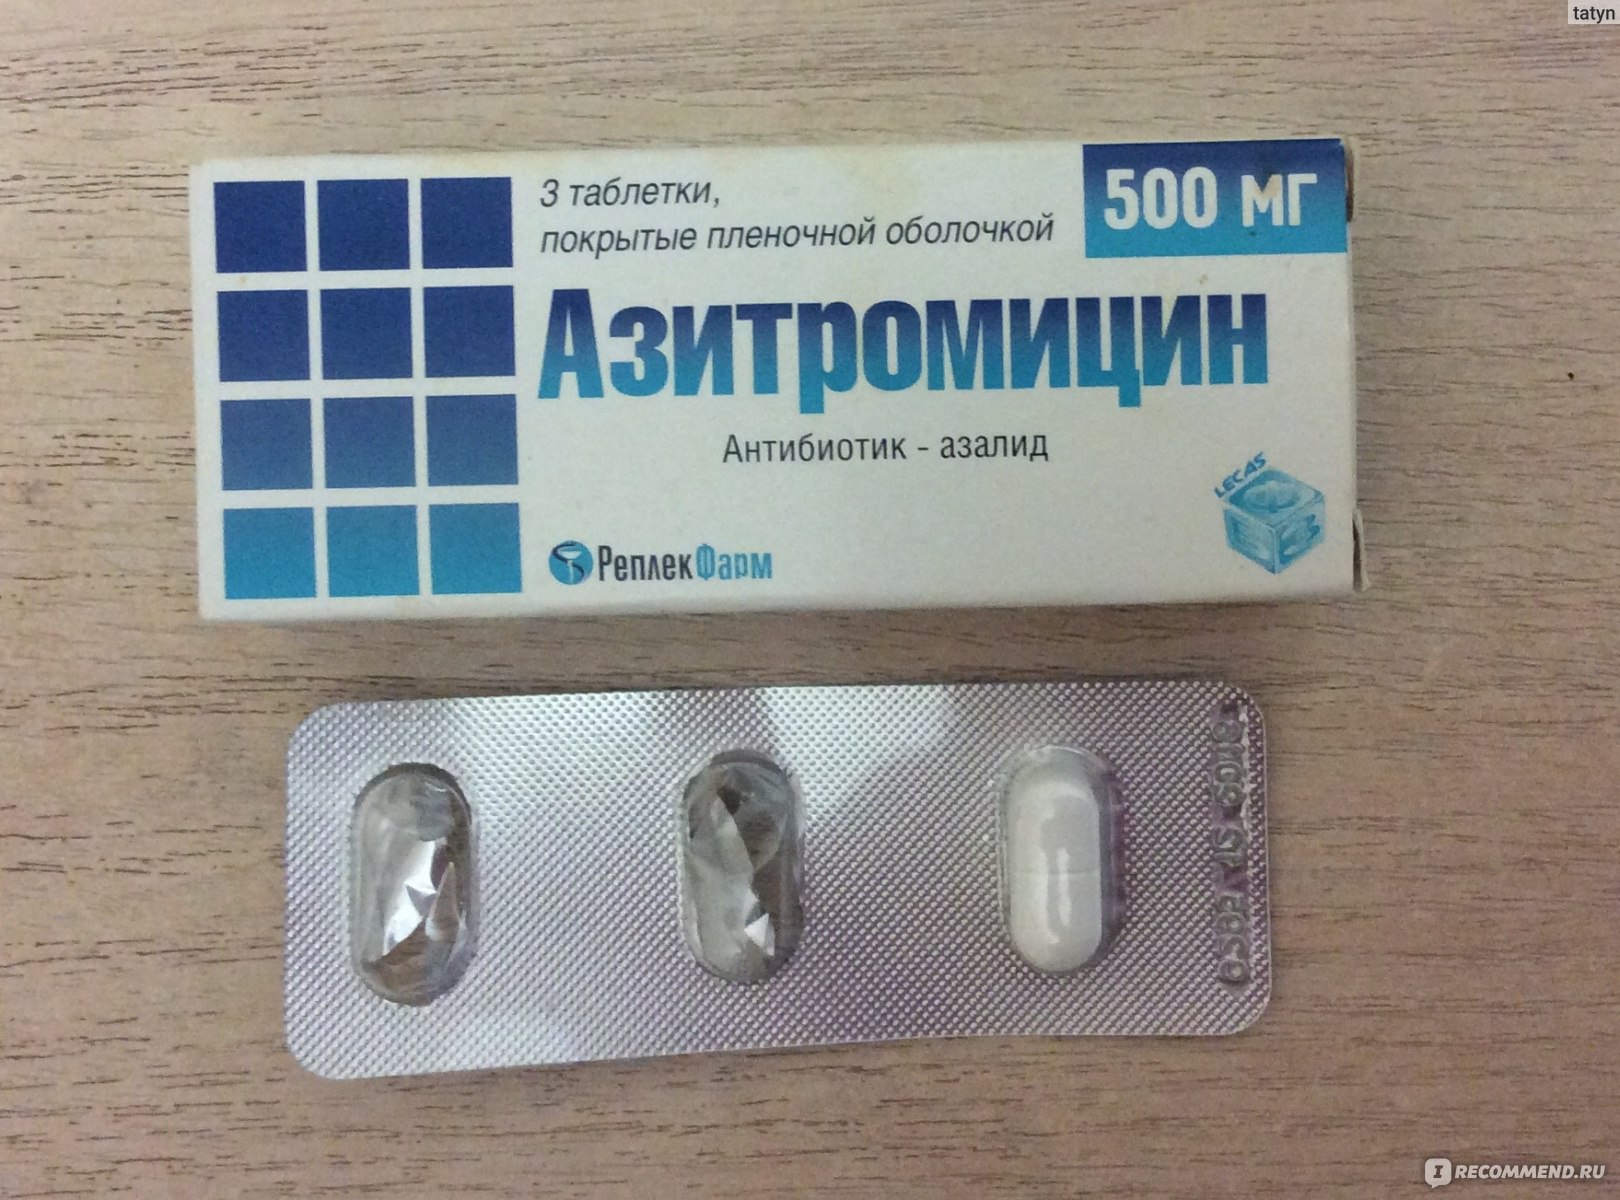 Антибиотики какой купить при простуде. Антибиотик Азитромицин 500 мг. Антибиотик 3 таблетки в упаковке Азитромицин. Антибиотик от кашля 3 таблетки название. Сильный антибиотик от простуды 3 таблетки.